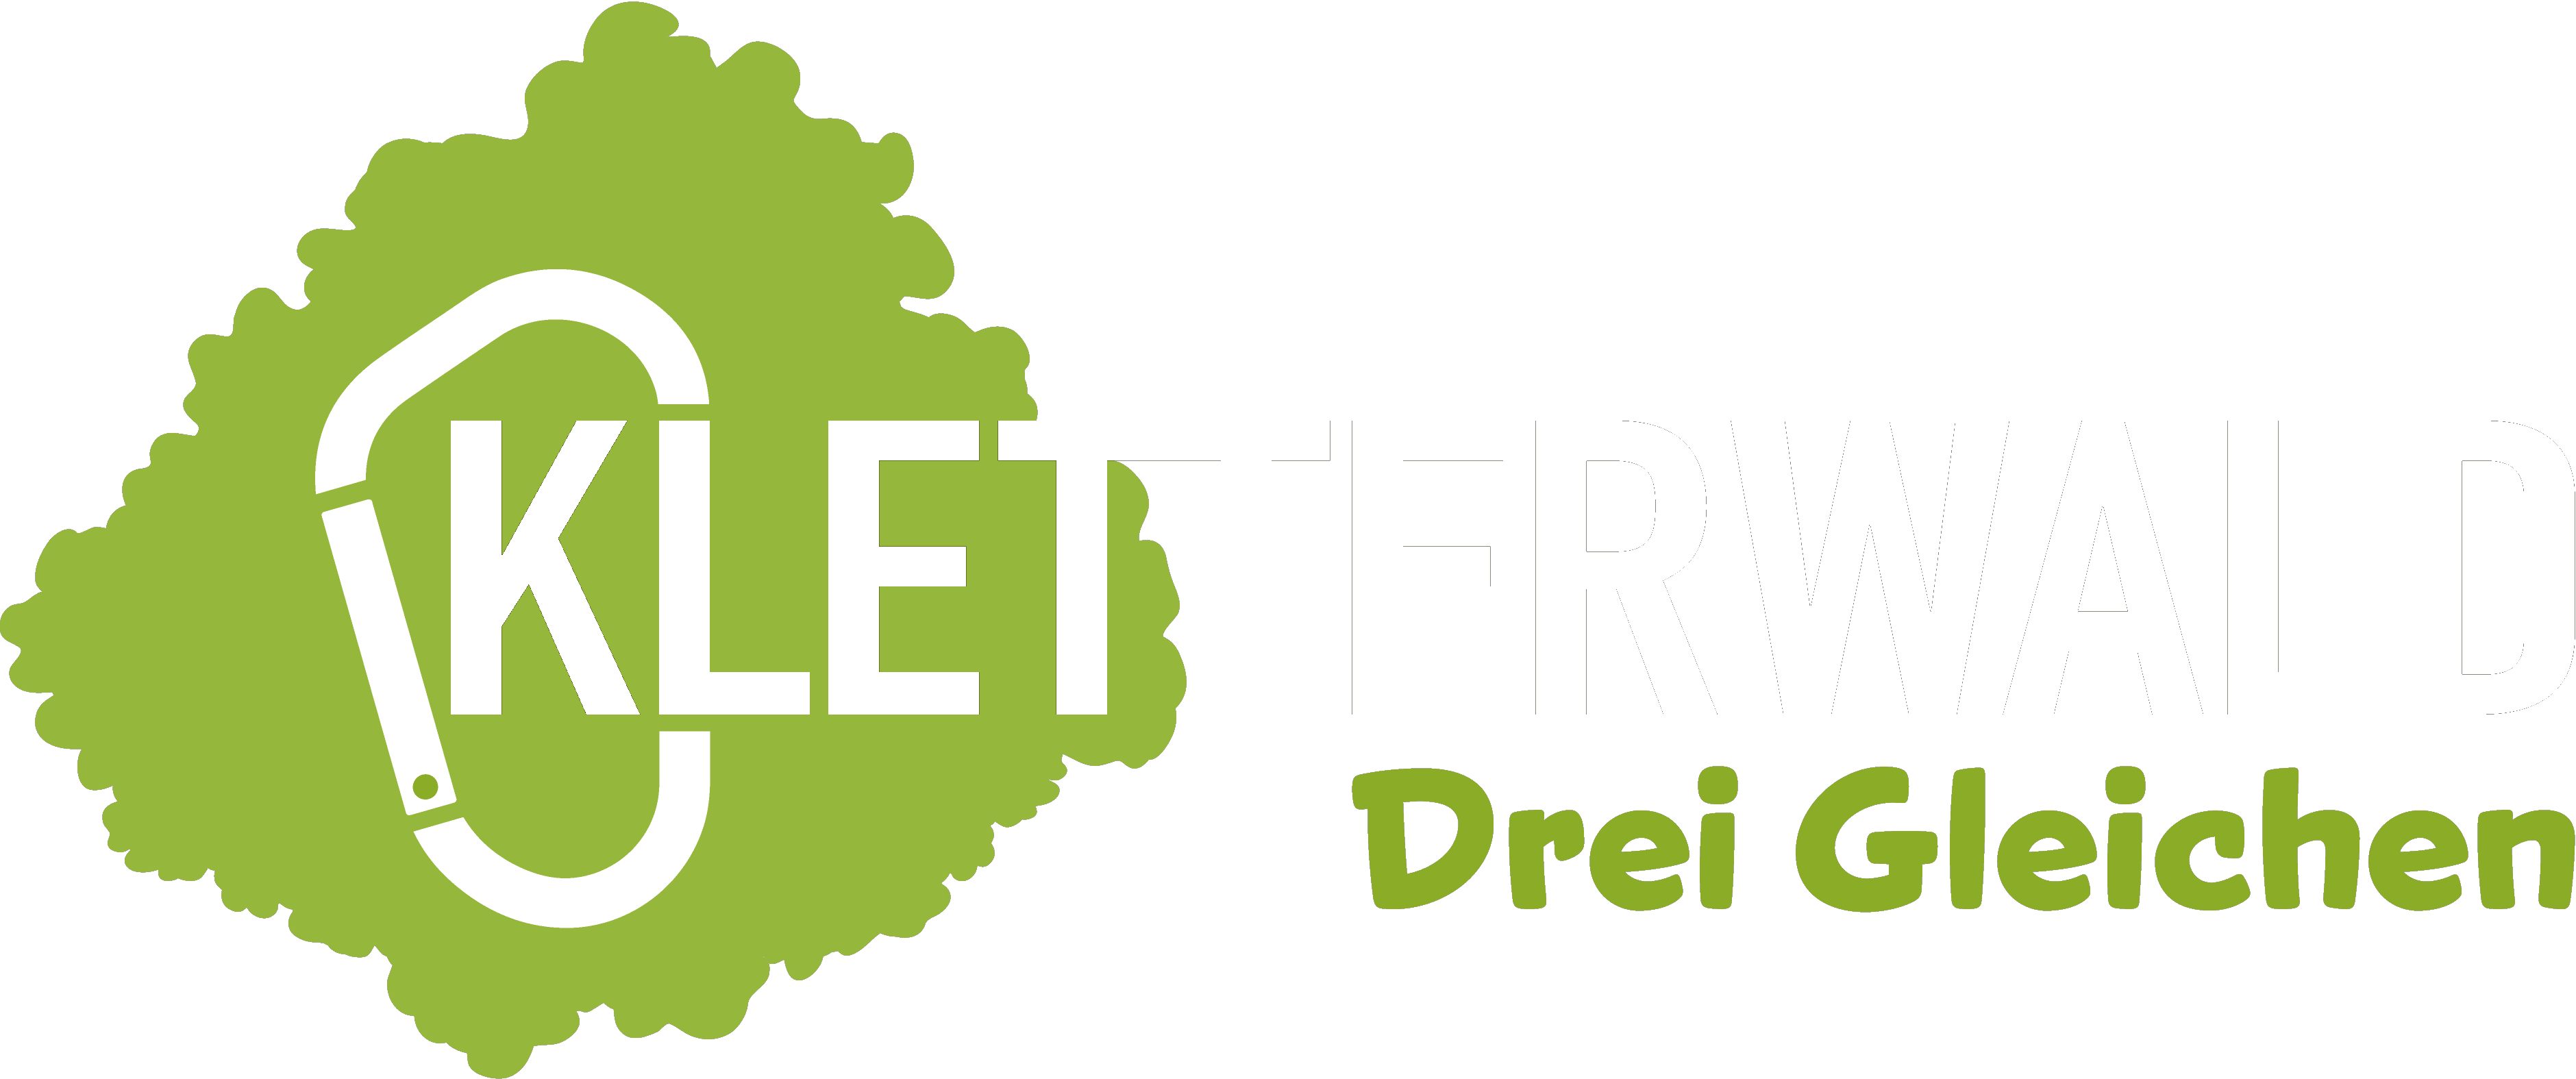 Logo_Kletterwald_Drei_Gleichen